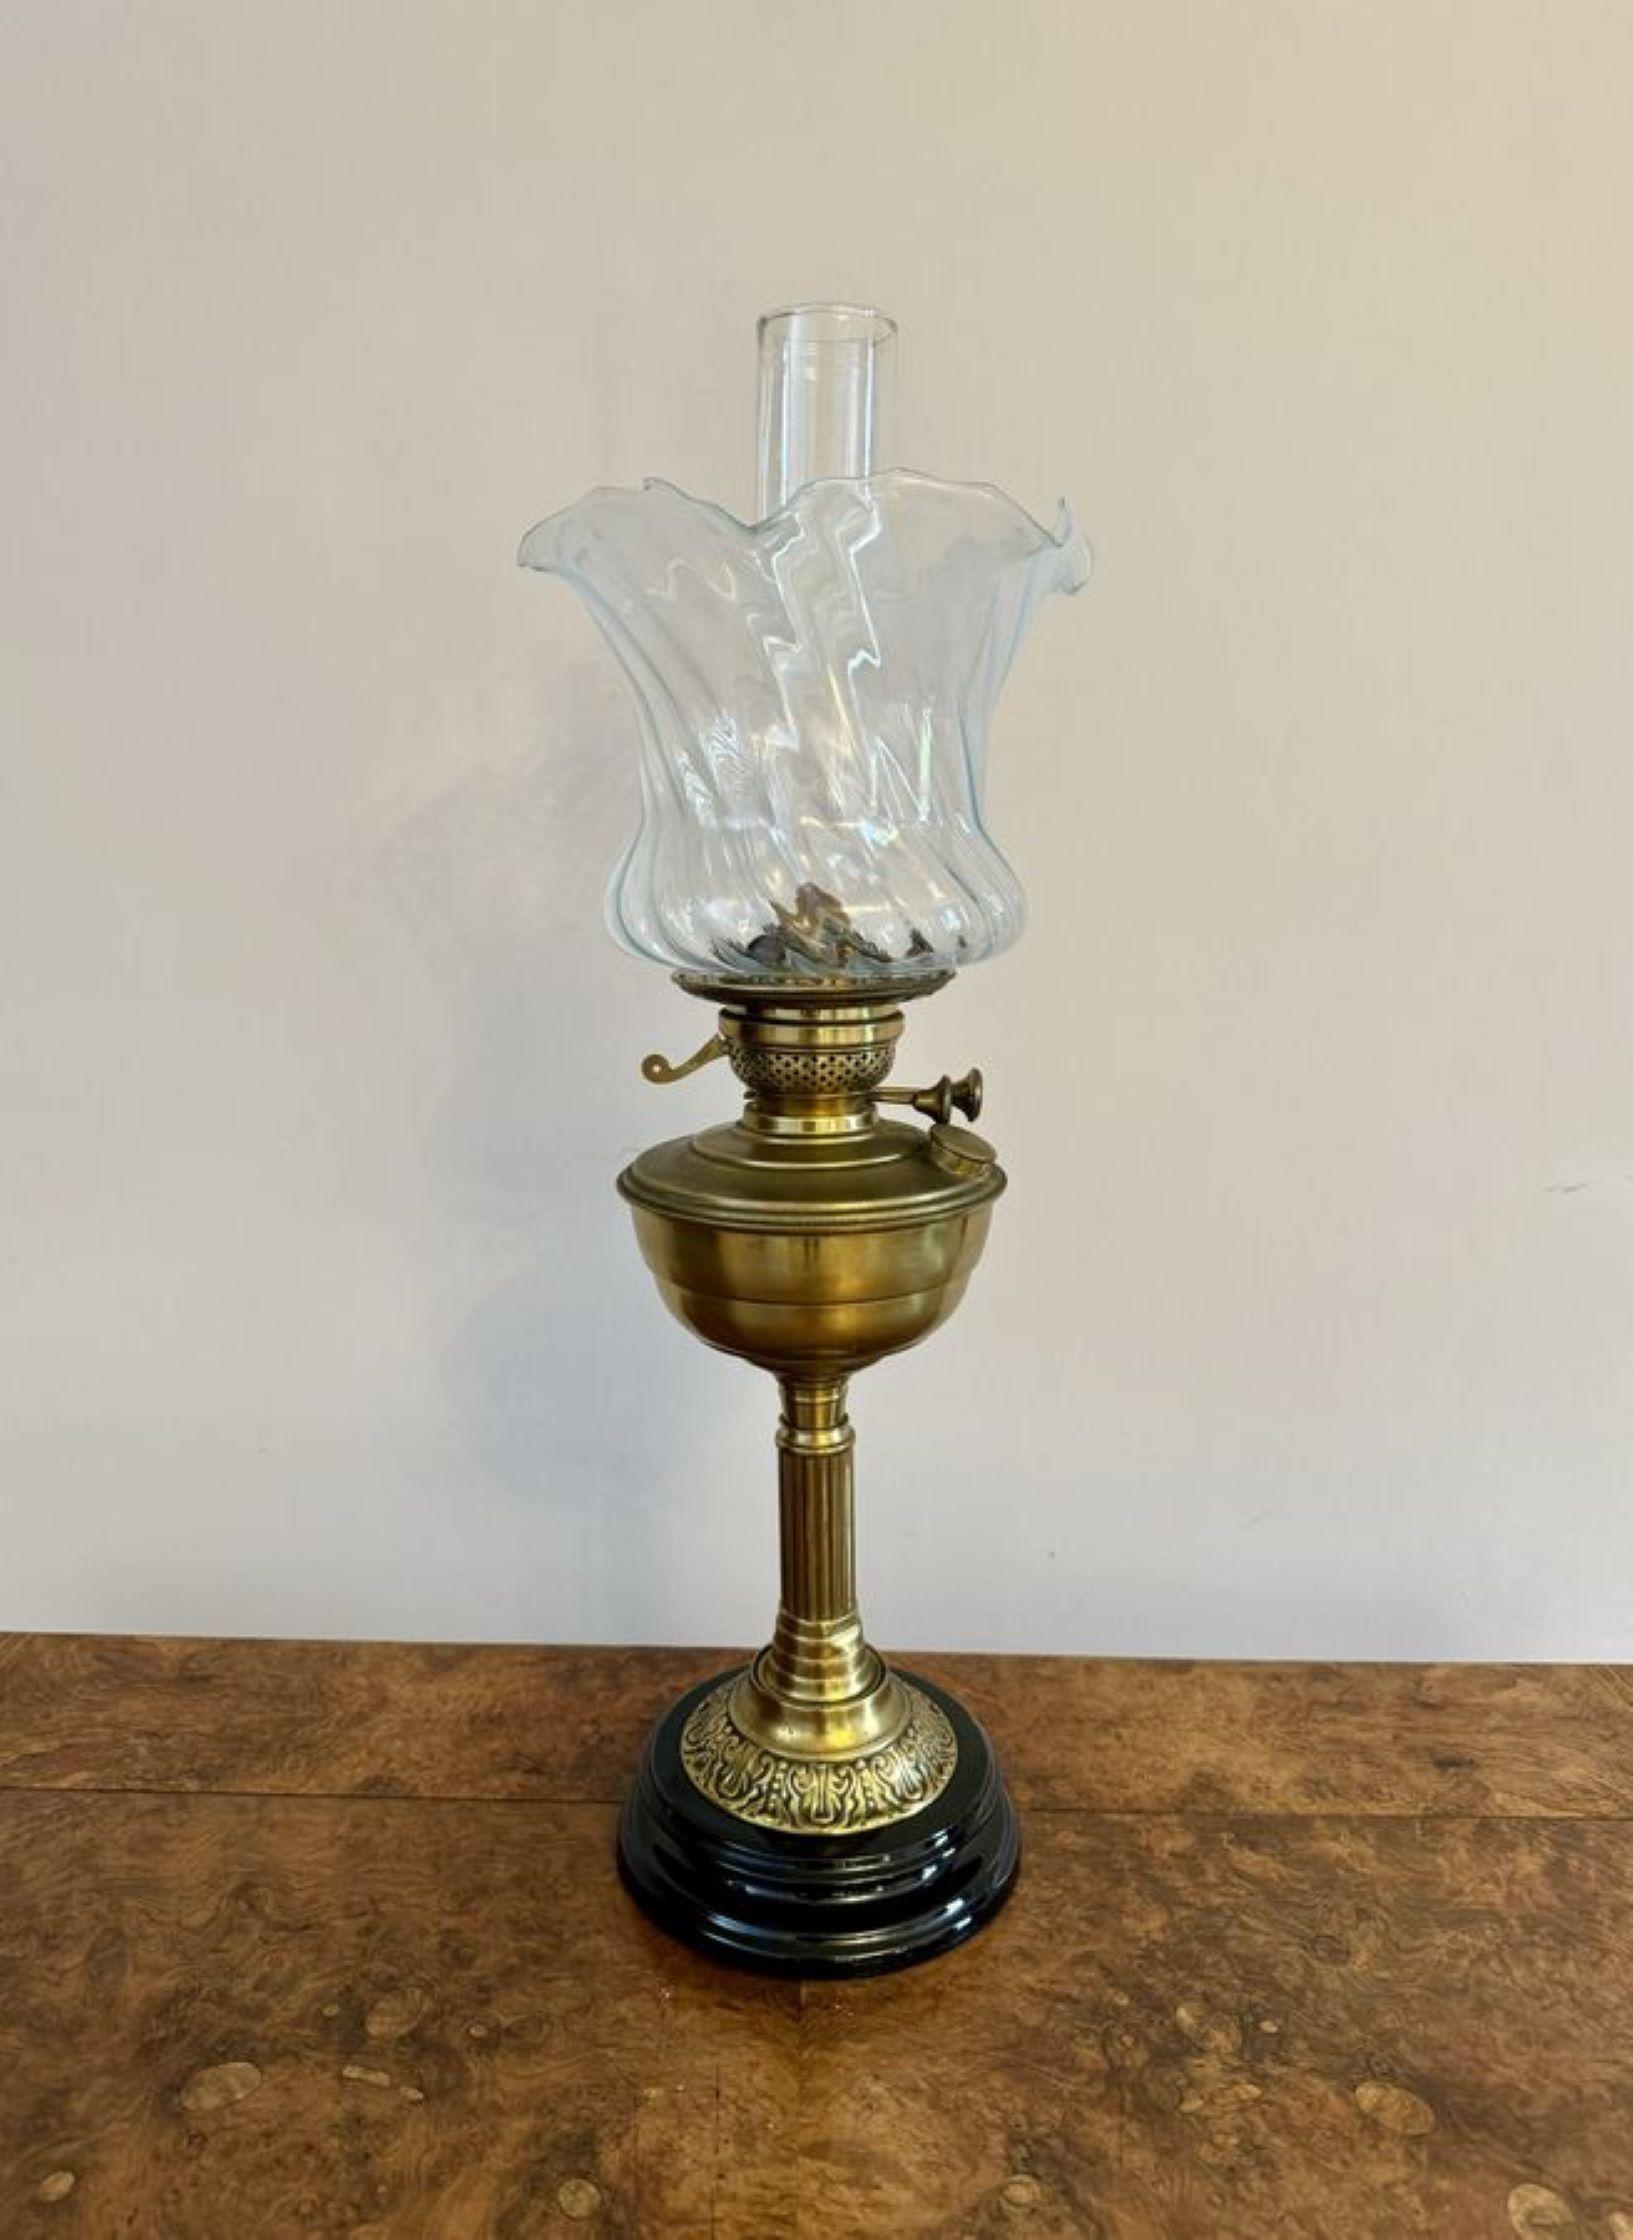 Hübsche antike Öllampe edwardianischer Qualität, mit dem originalen Glasschirm mit gewelltem Rand, einem gläsernen Schornstein, einem Messingbrenner, der von einer Messingsäule getragen wird und auf einem runden Sockel steht.

D. 1900